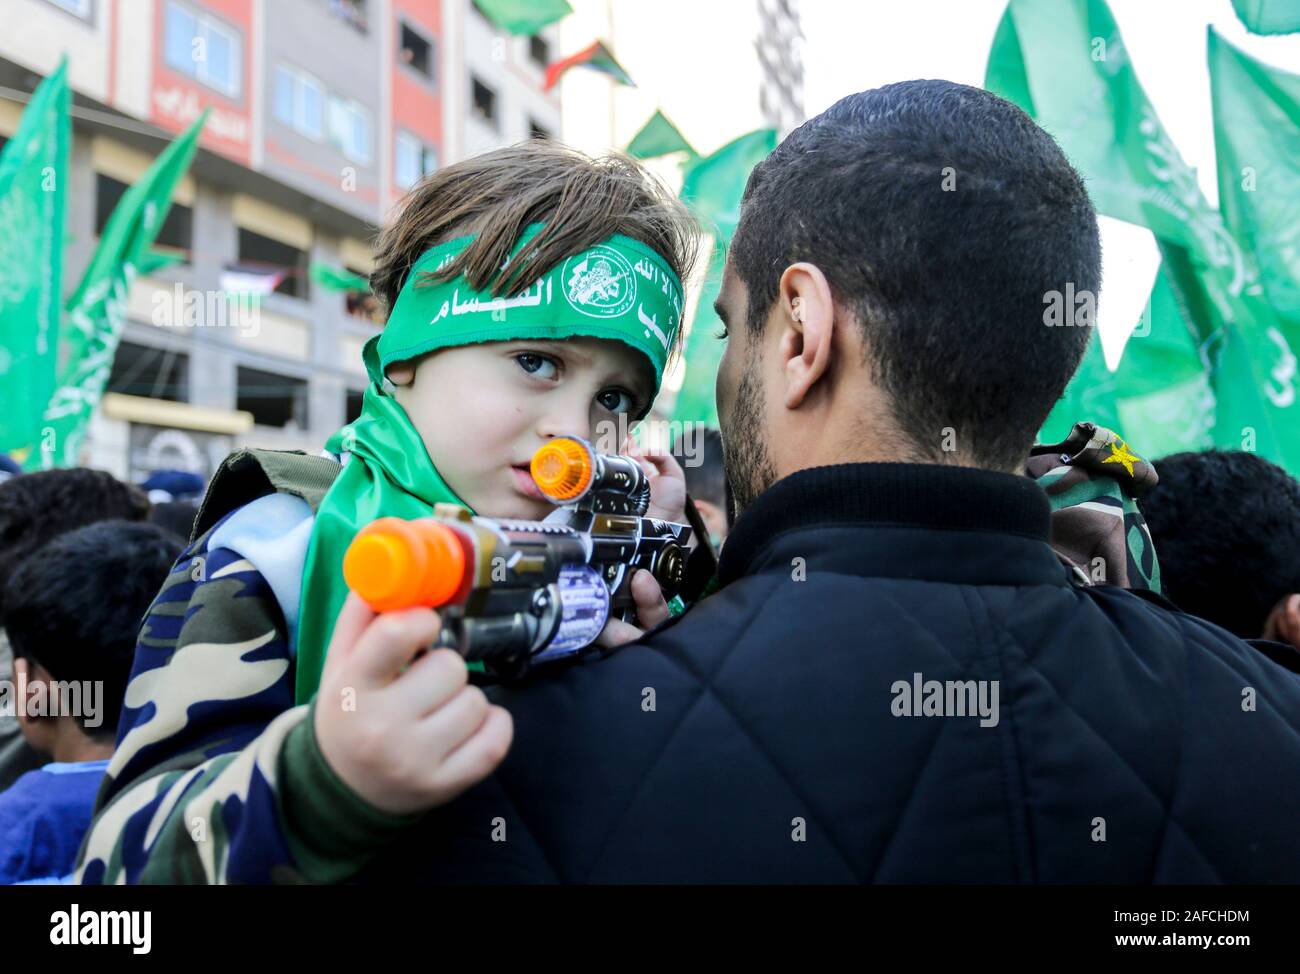 Le Hamas palestinien partisan pour enfants avec un pistolet jouet pendant un rassemblement marquant le 32e anniversaire de la fondation du mouvement islamiste Hamas. Banque D'Images